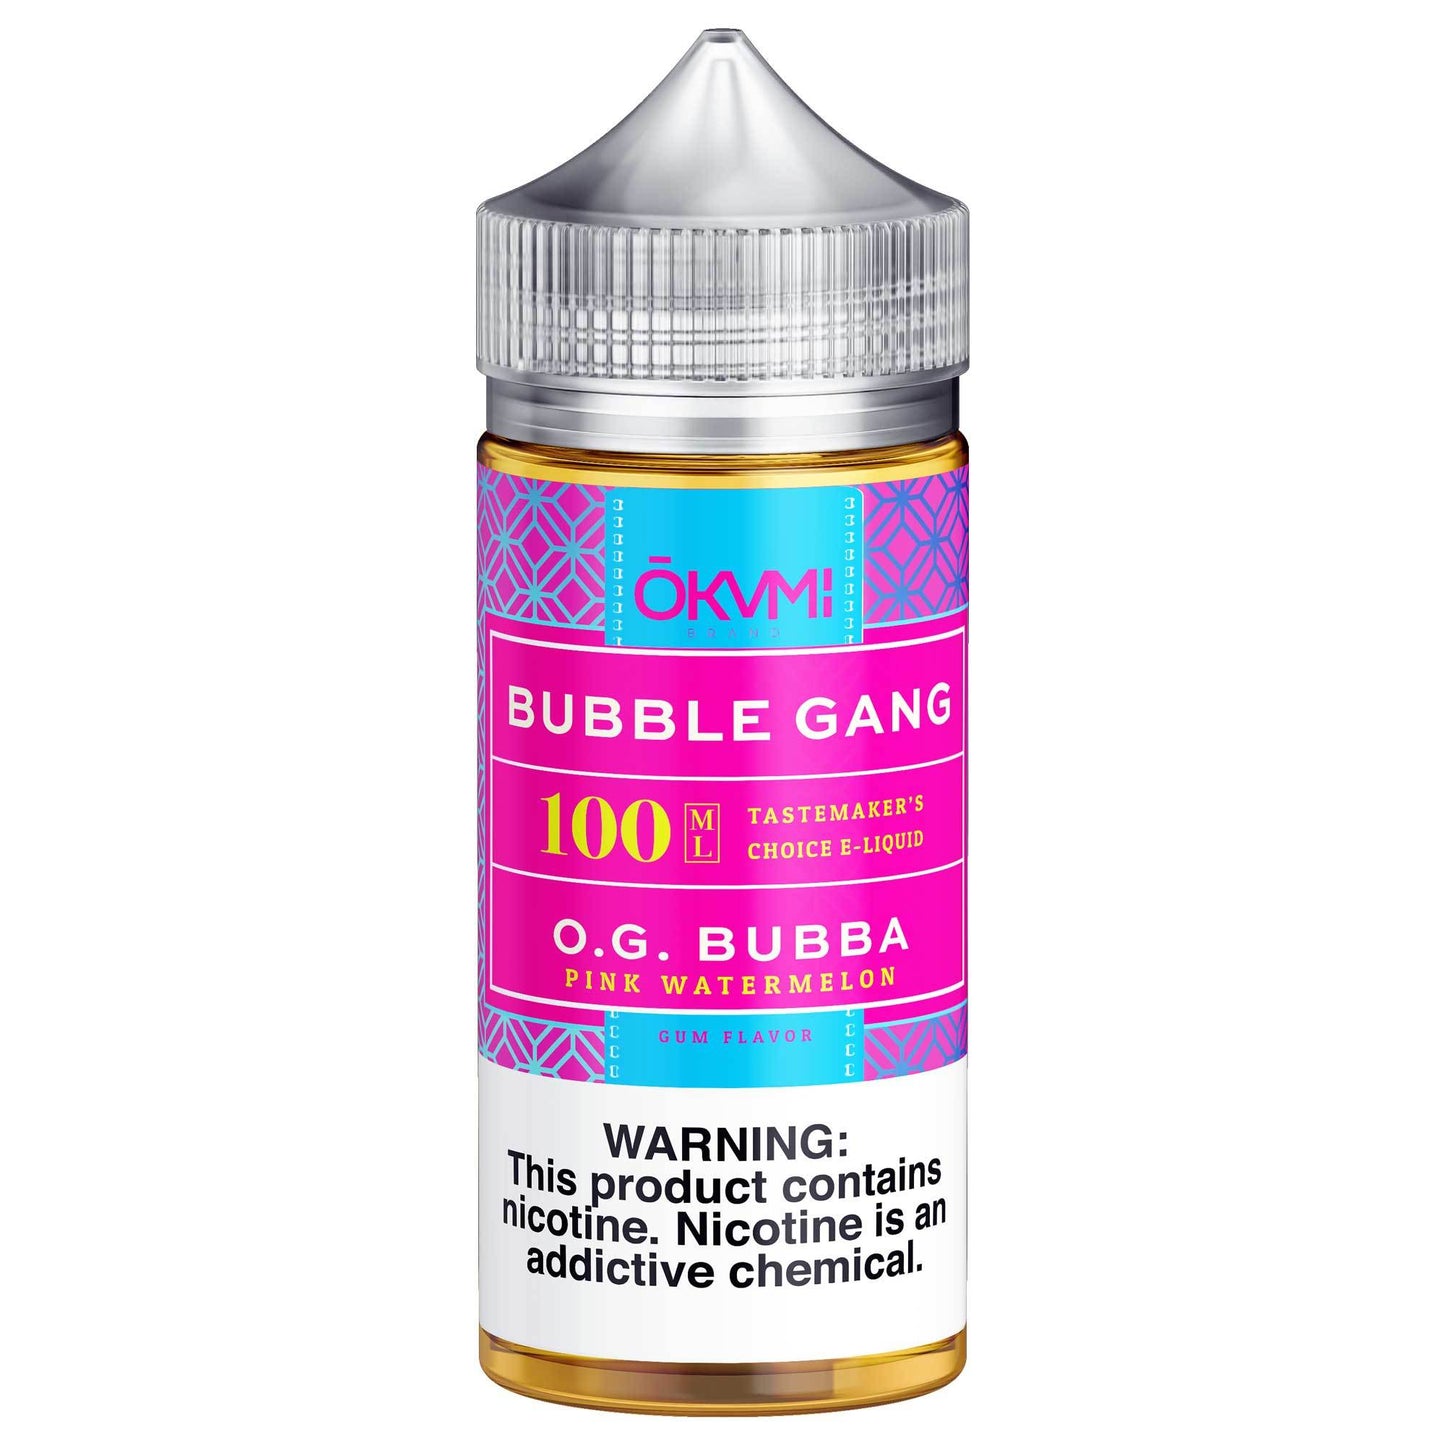 OG Bubba by BUBBLE GANG E-Liquid 100ml bottle